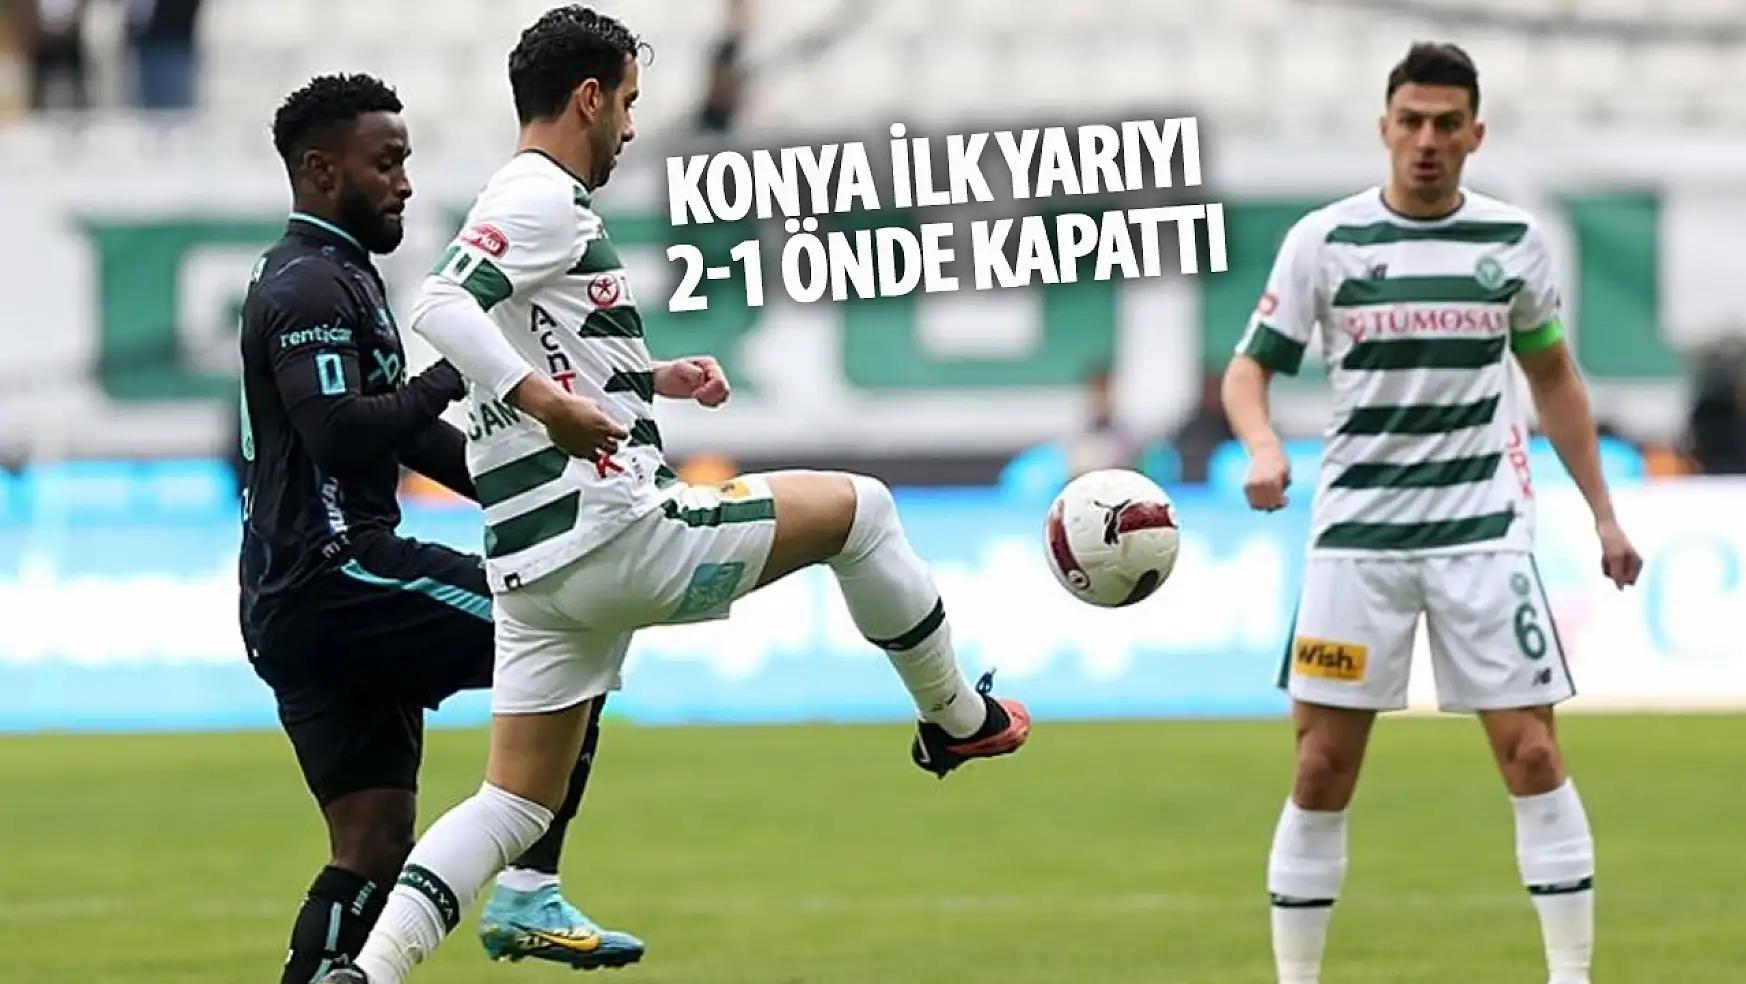 Konyaspor, ilk yarıyı 2-1 önde kapattı!